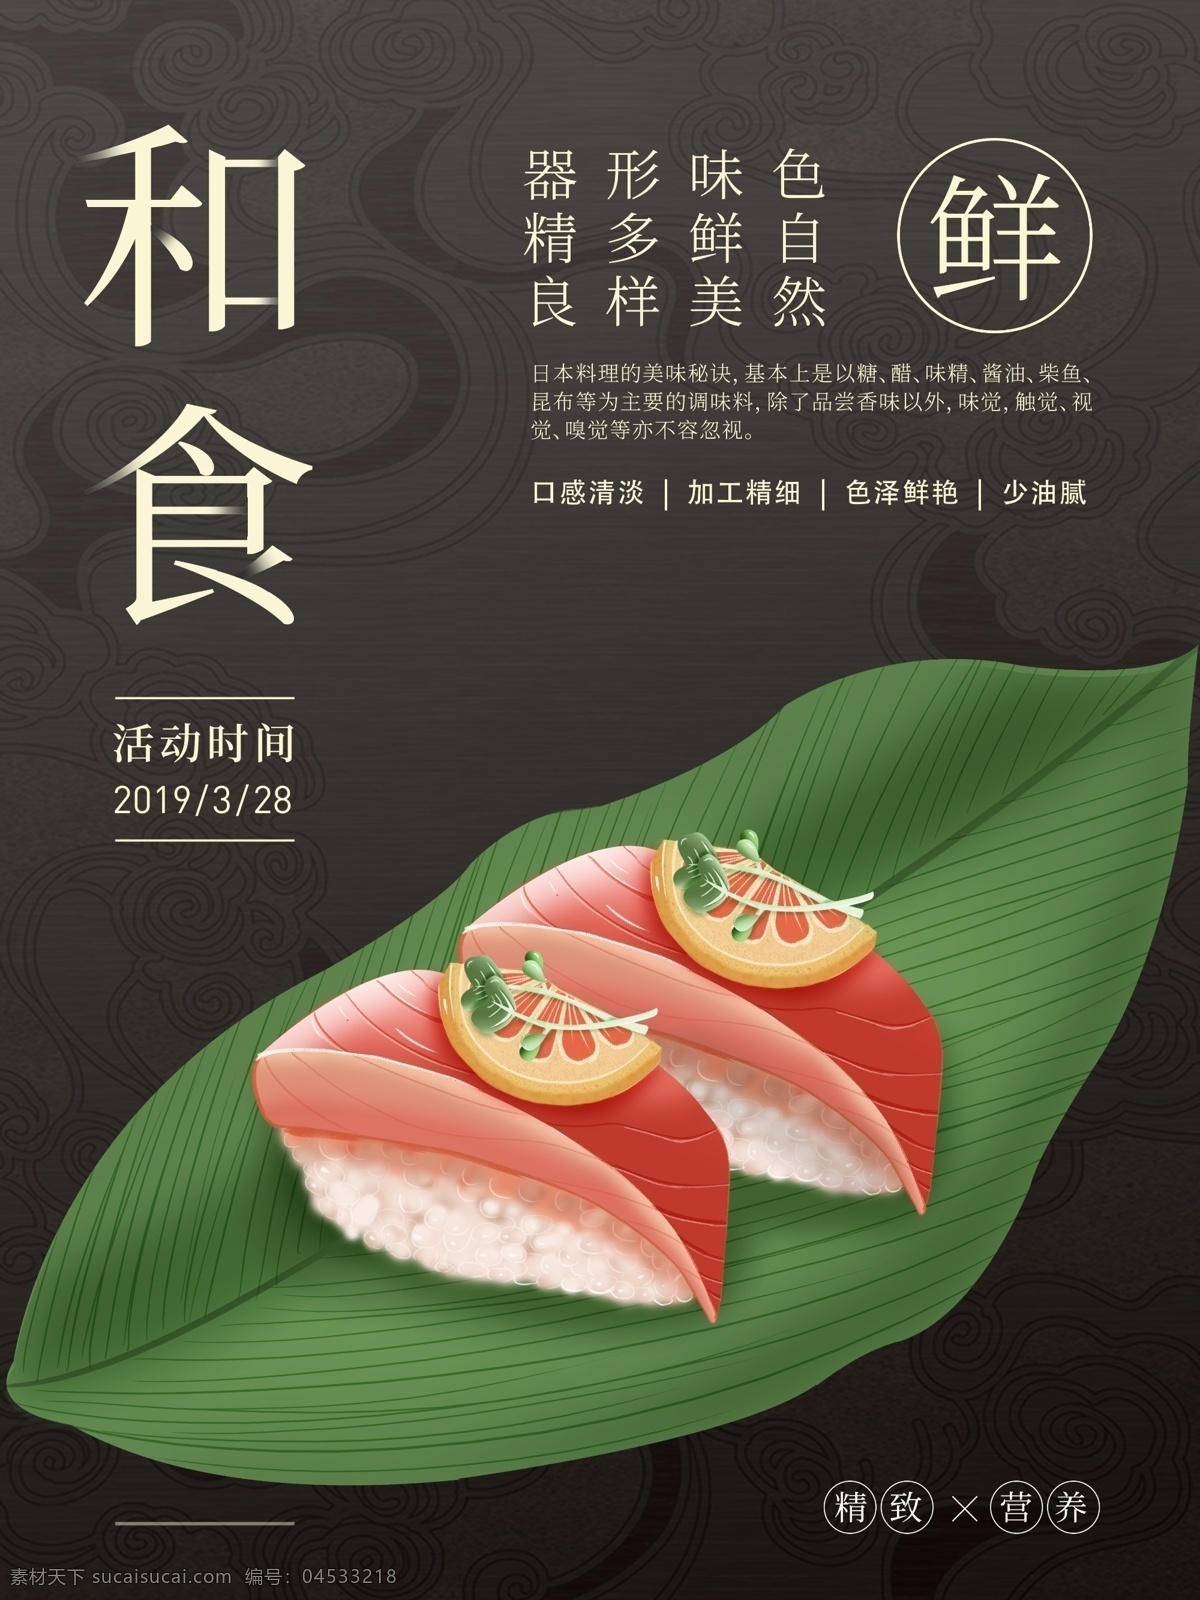 原创 插画 日本 美食 排版 海报 原创插画 和食 寿司 简约 活动 优惠 各色 主题